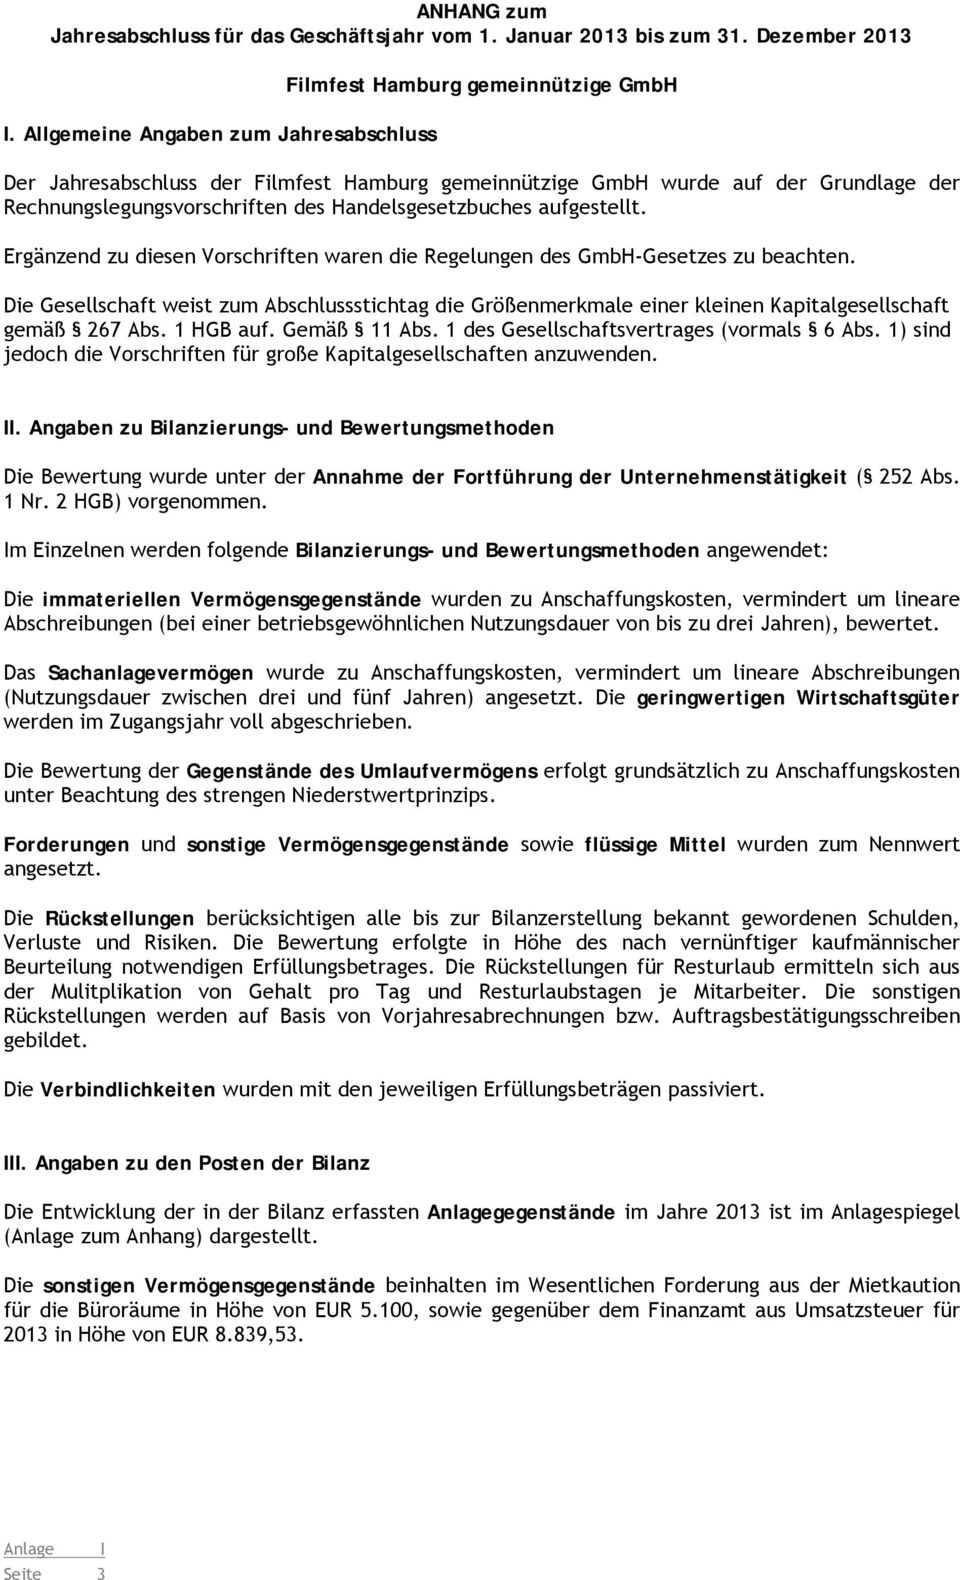 Handelsgesetzbuches aufgestellt. Ergänzend zu diesen Vorschriften waren die Regelungen des GmbH-Gesetzes zu beachten.